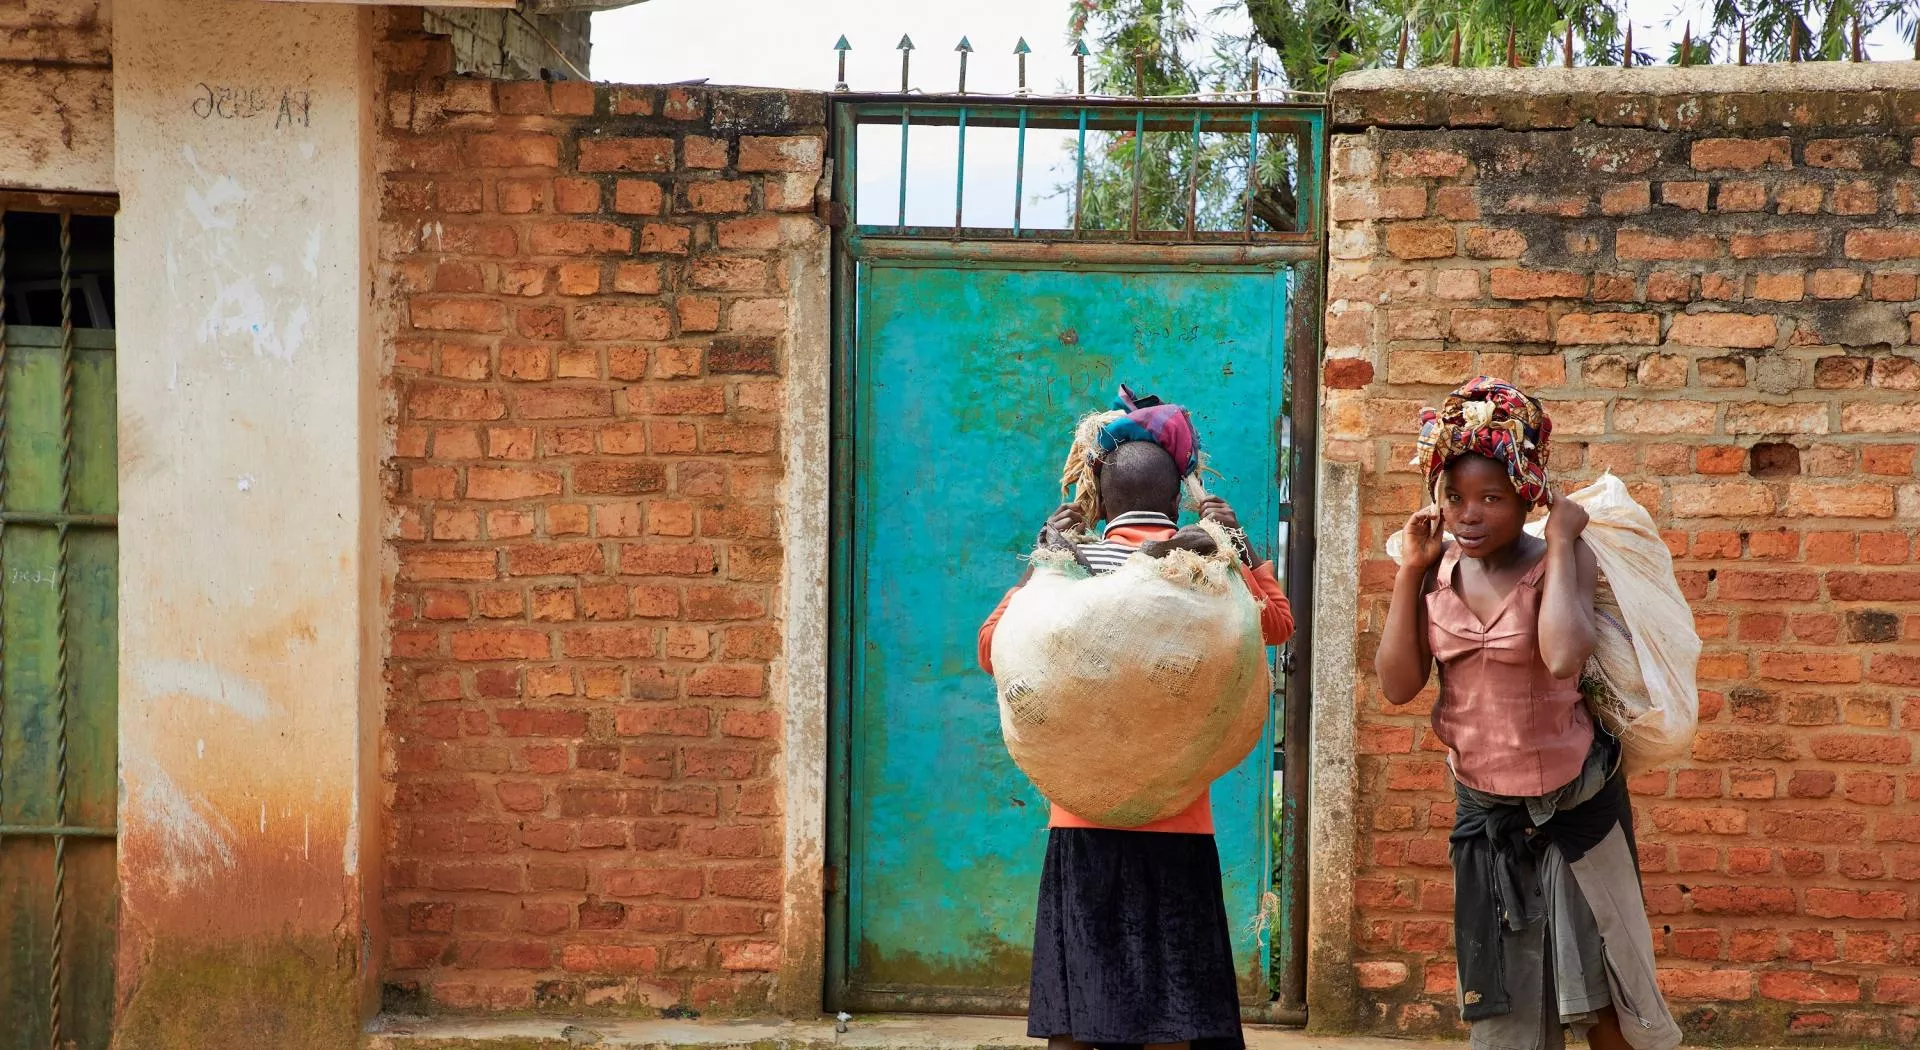 Women in Congo carrying heavy loads